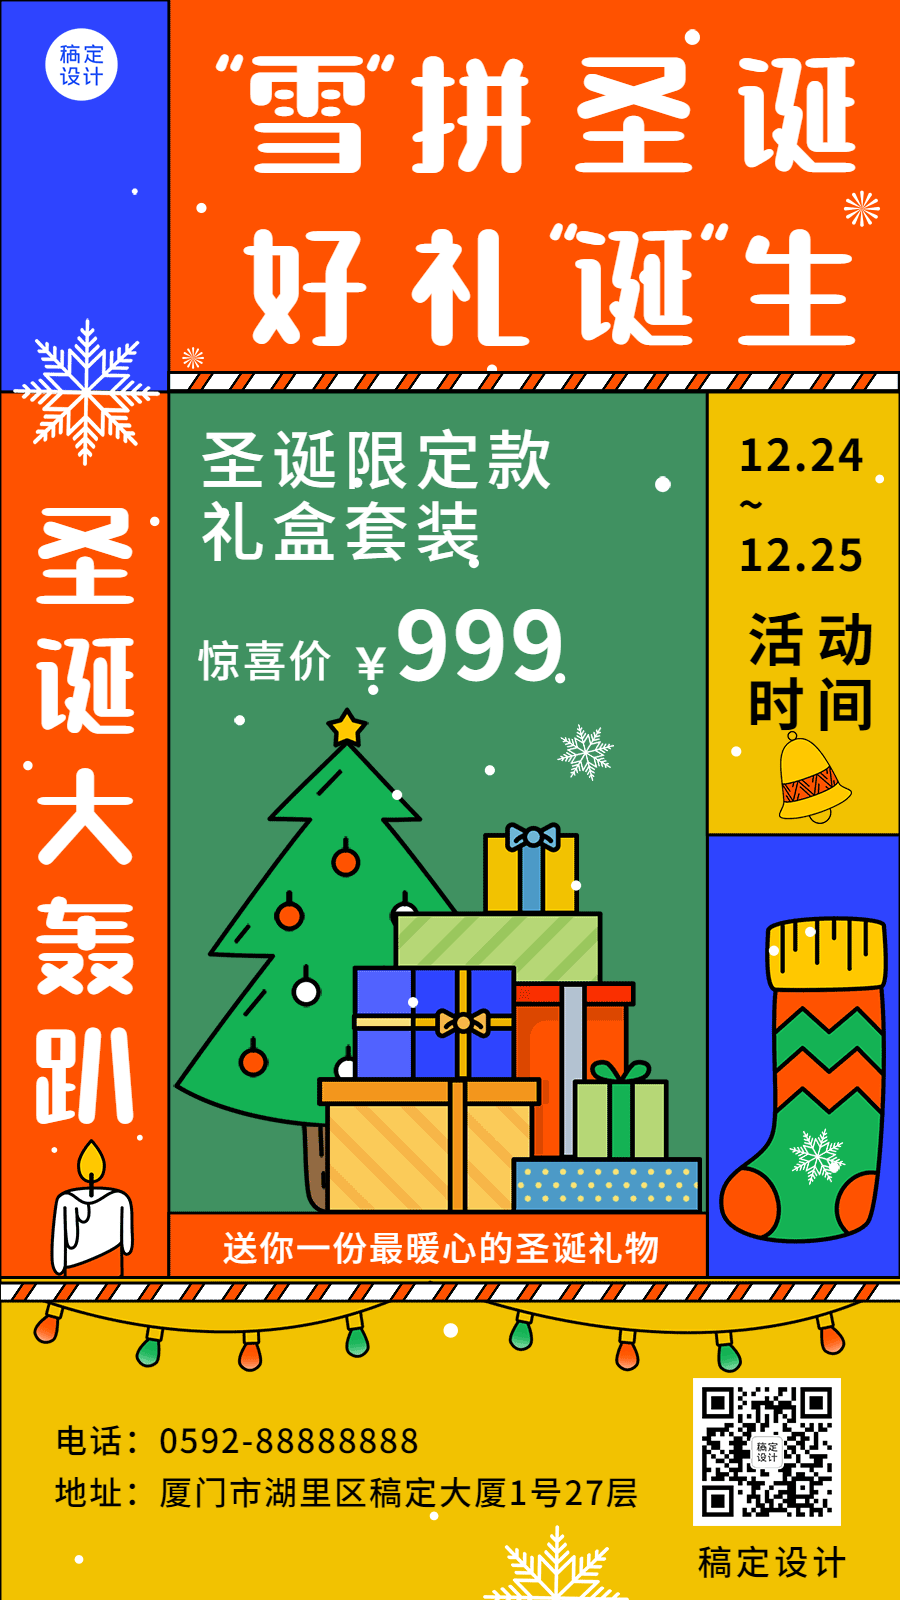 圣诞节应活动营销特价GIF动态海报预览效果